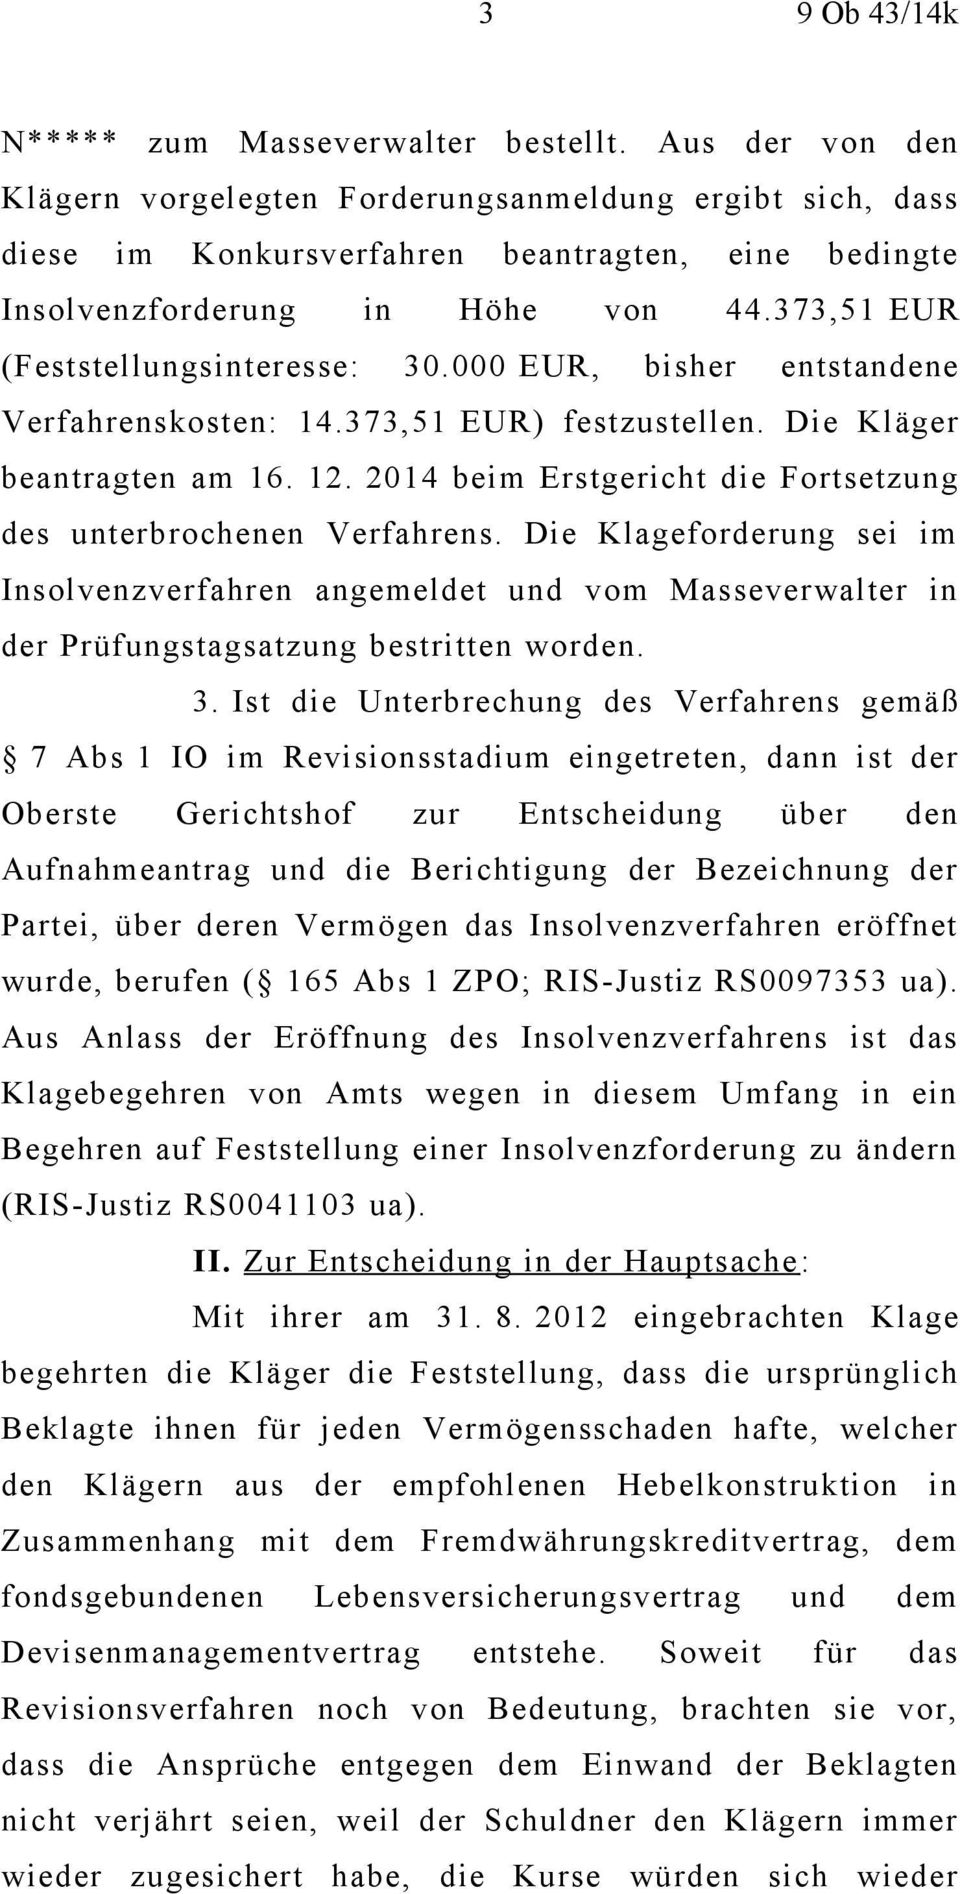 000 EUR, bisher entstandene Verfahrenskosten: 14.373,51 EUR) festzustellen. Die Kläger beantragten am 16. 12. 2014 beim Erstgericht die Fortsetzung des unterbrochenen Verfahrens.